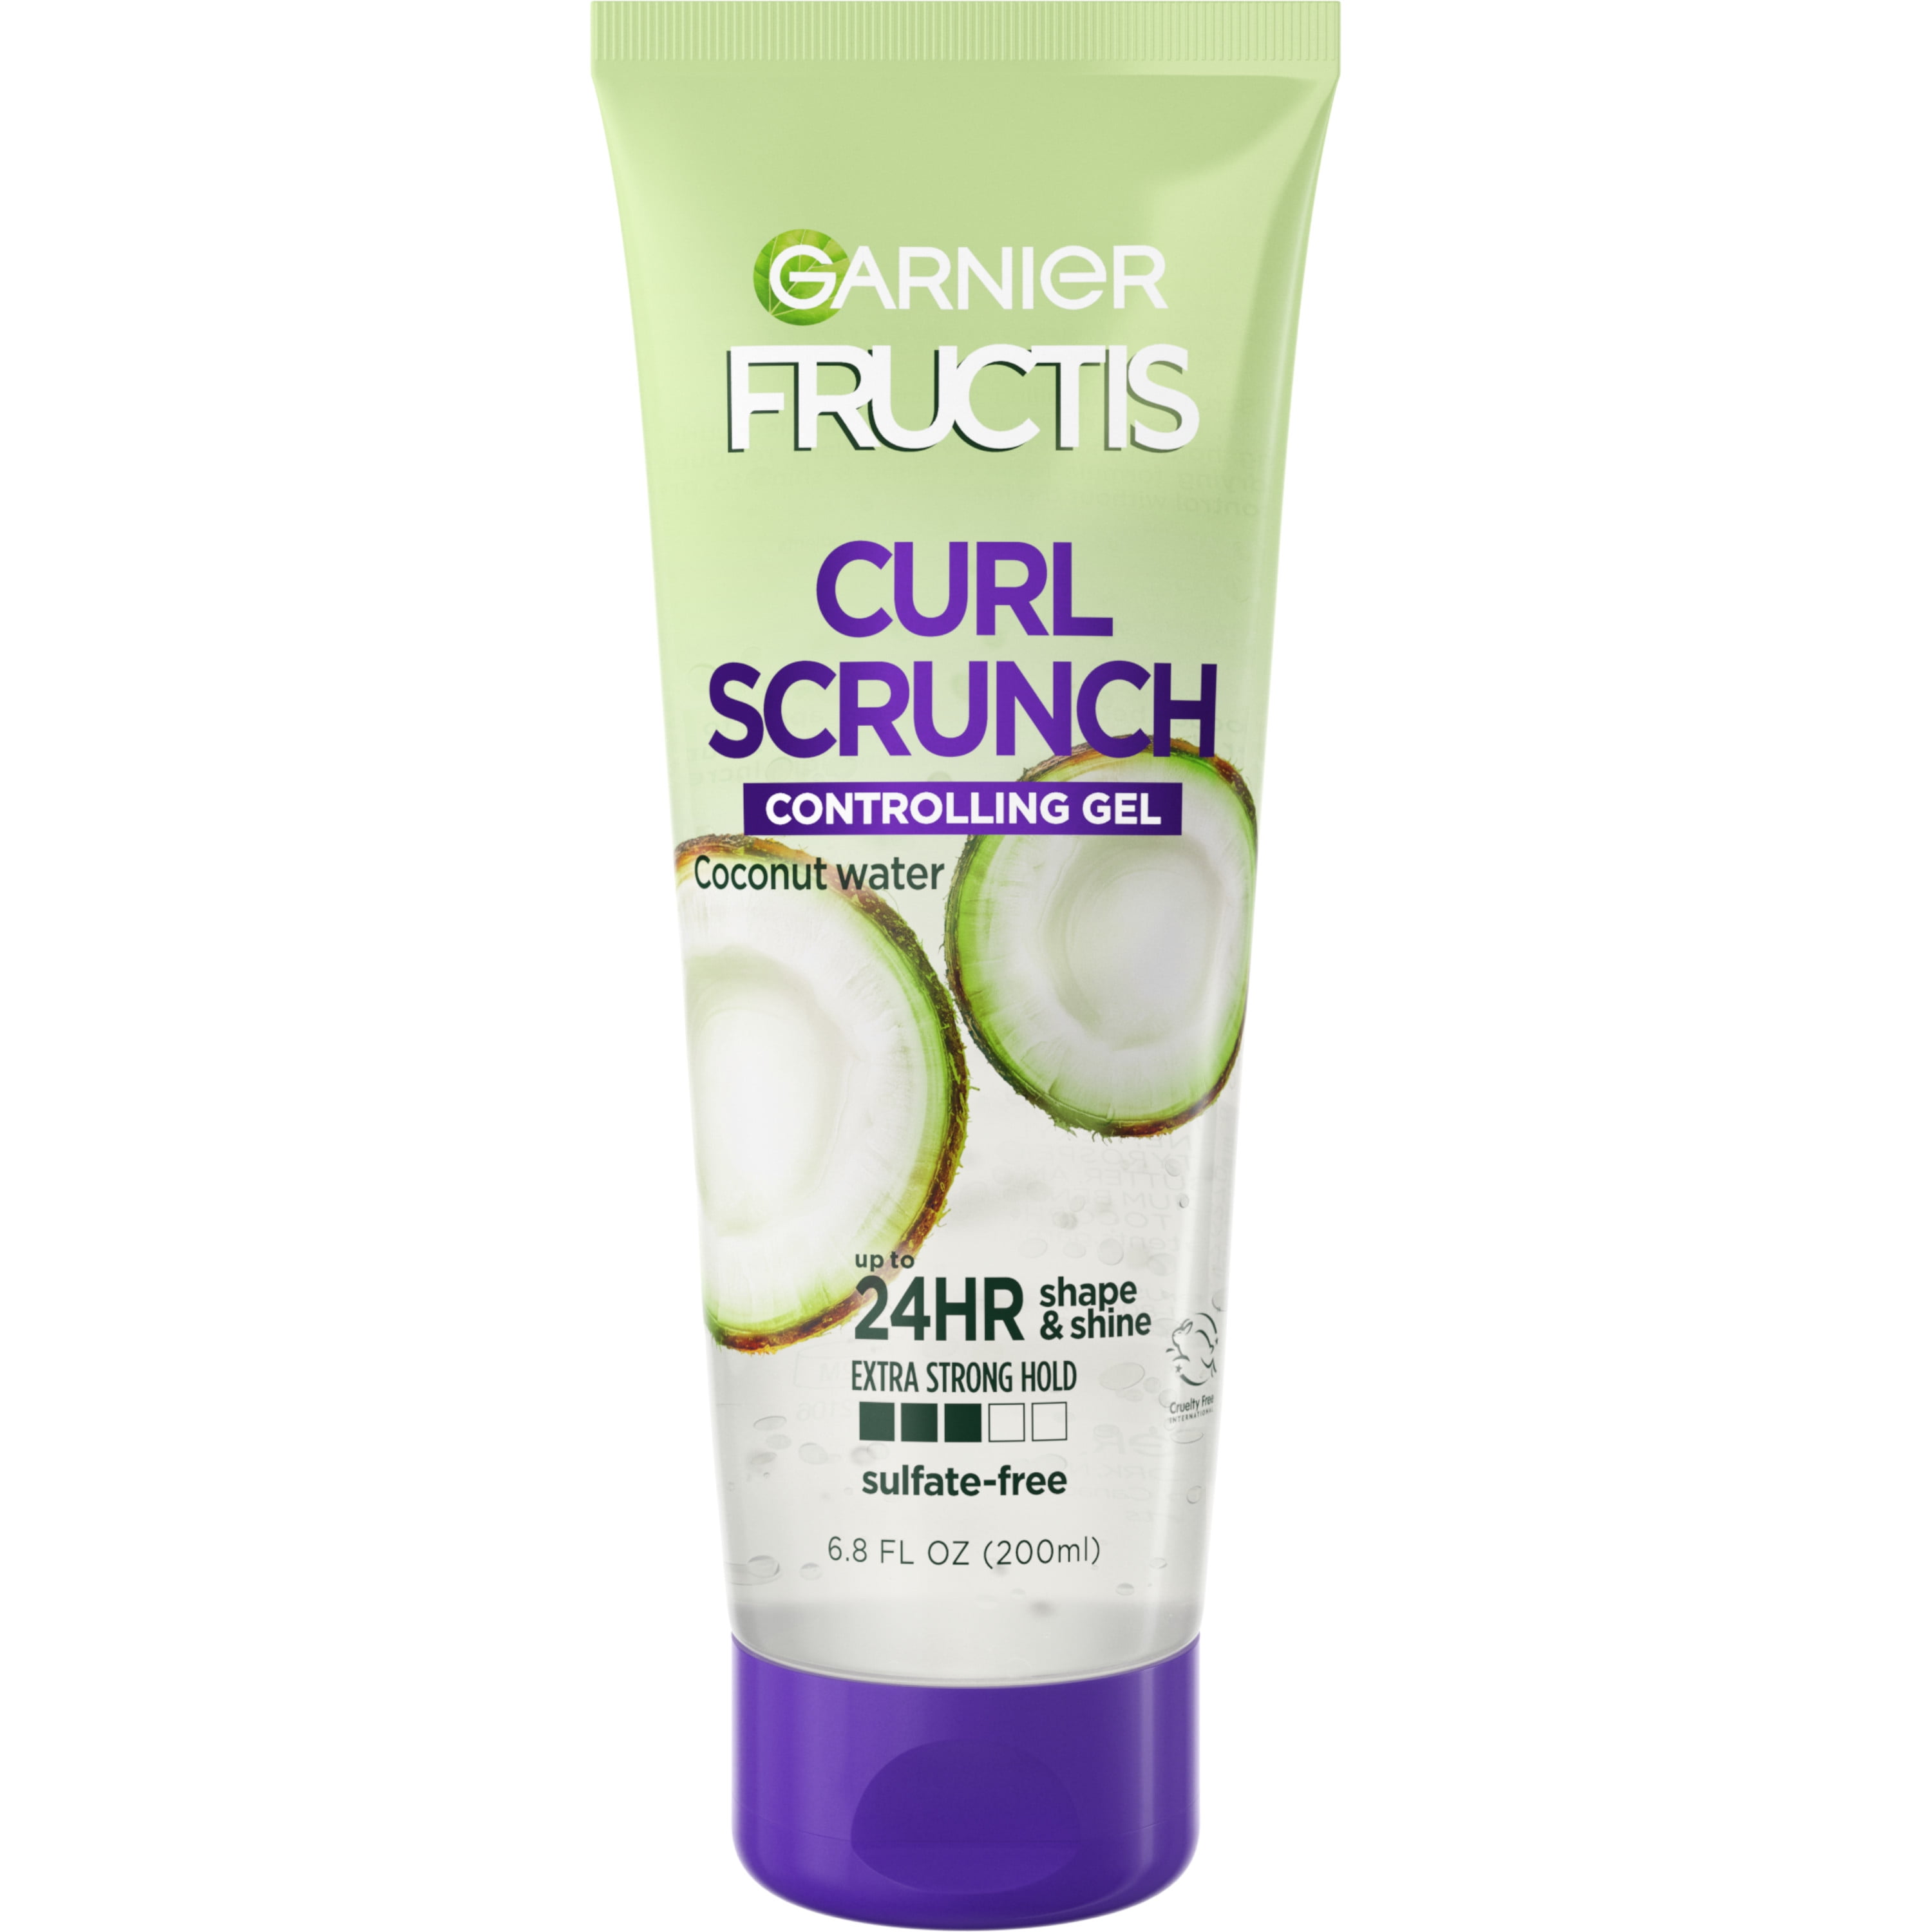 Garnier Fructis Style Curl Scrunch Controlling Gel, For Curly Hair, 6.8 fl oz